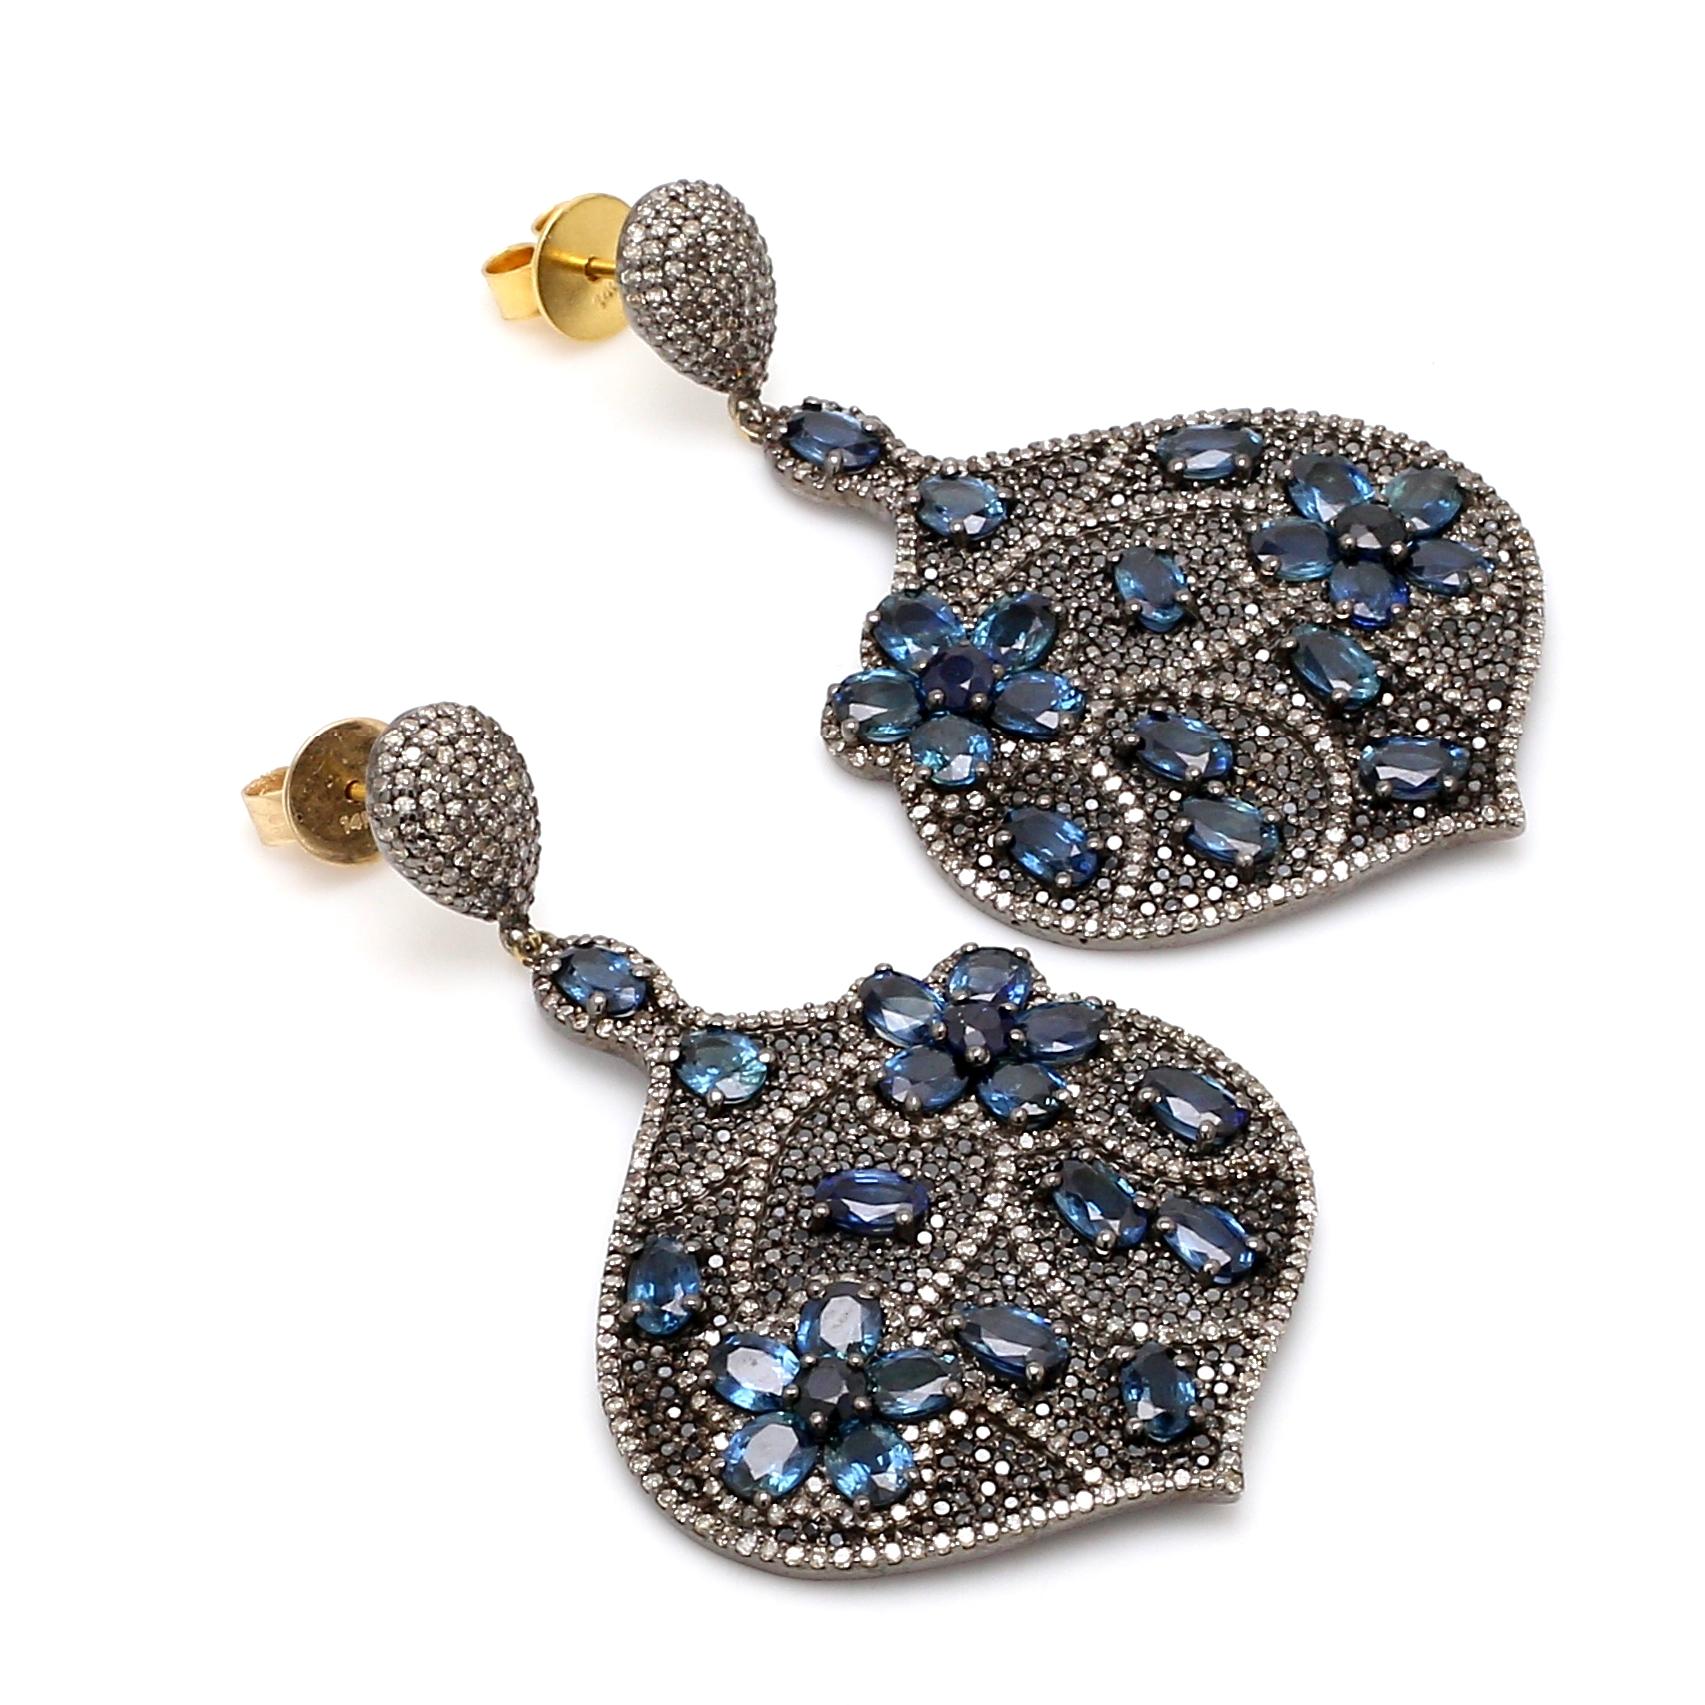 12.68 Karat Blauer Saphir und Diamant Ohrringe im viktorianischen Stil

Dieser tiefblaue Saphir- und Diamantohrring im Art-Deco-Stil aus der viktorianischen Zeit ist auffallend schön. Die aufsehenerregende Birnenform wird von einem ganzen Korb mit